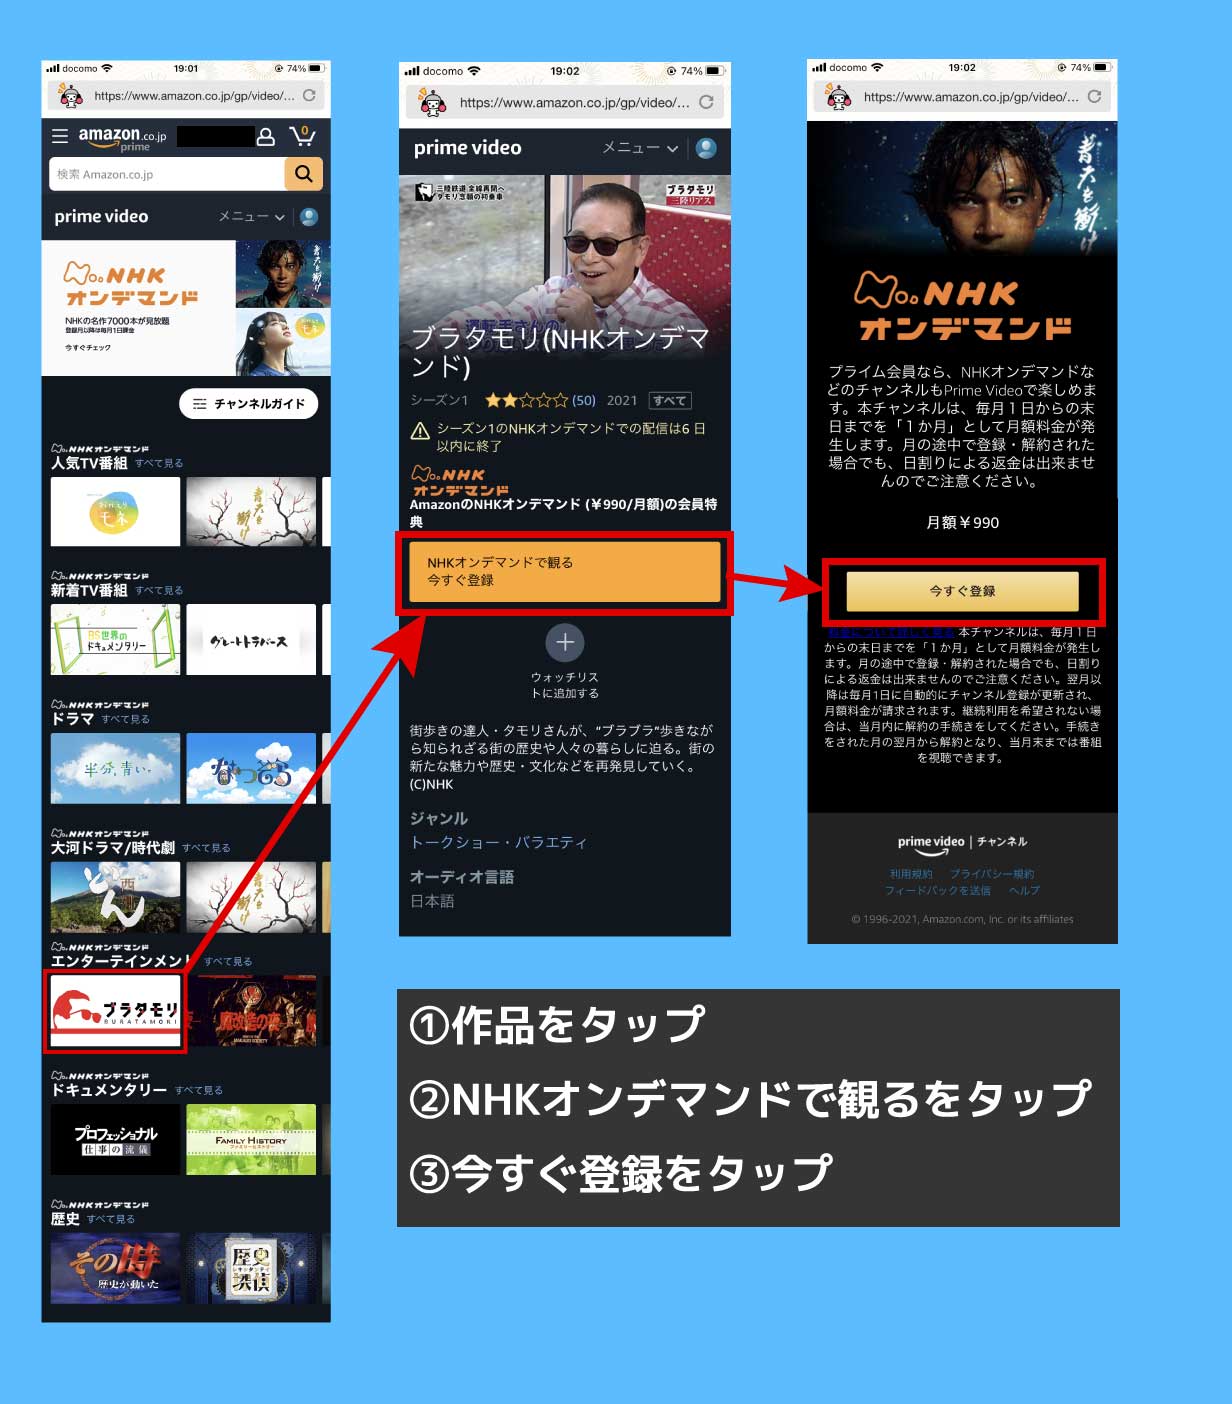 NHKオンデマンドの登録画面